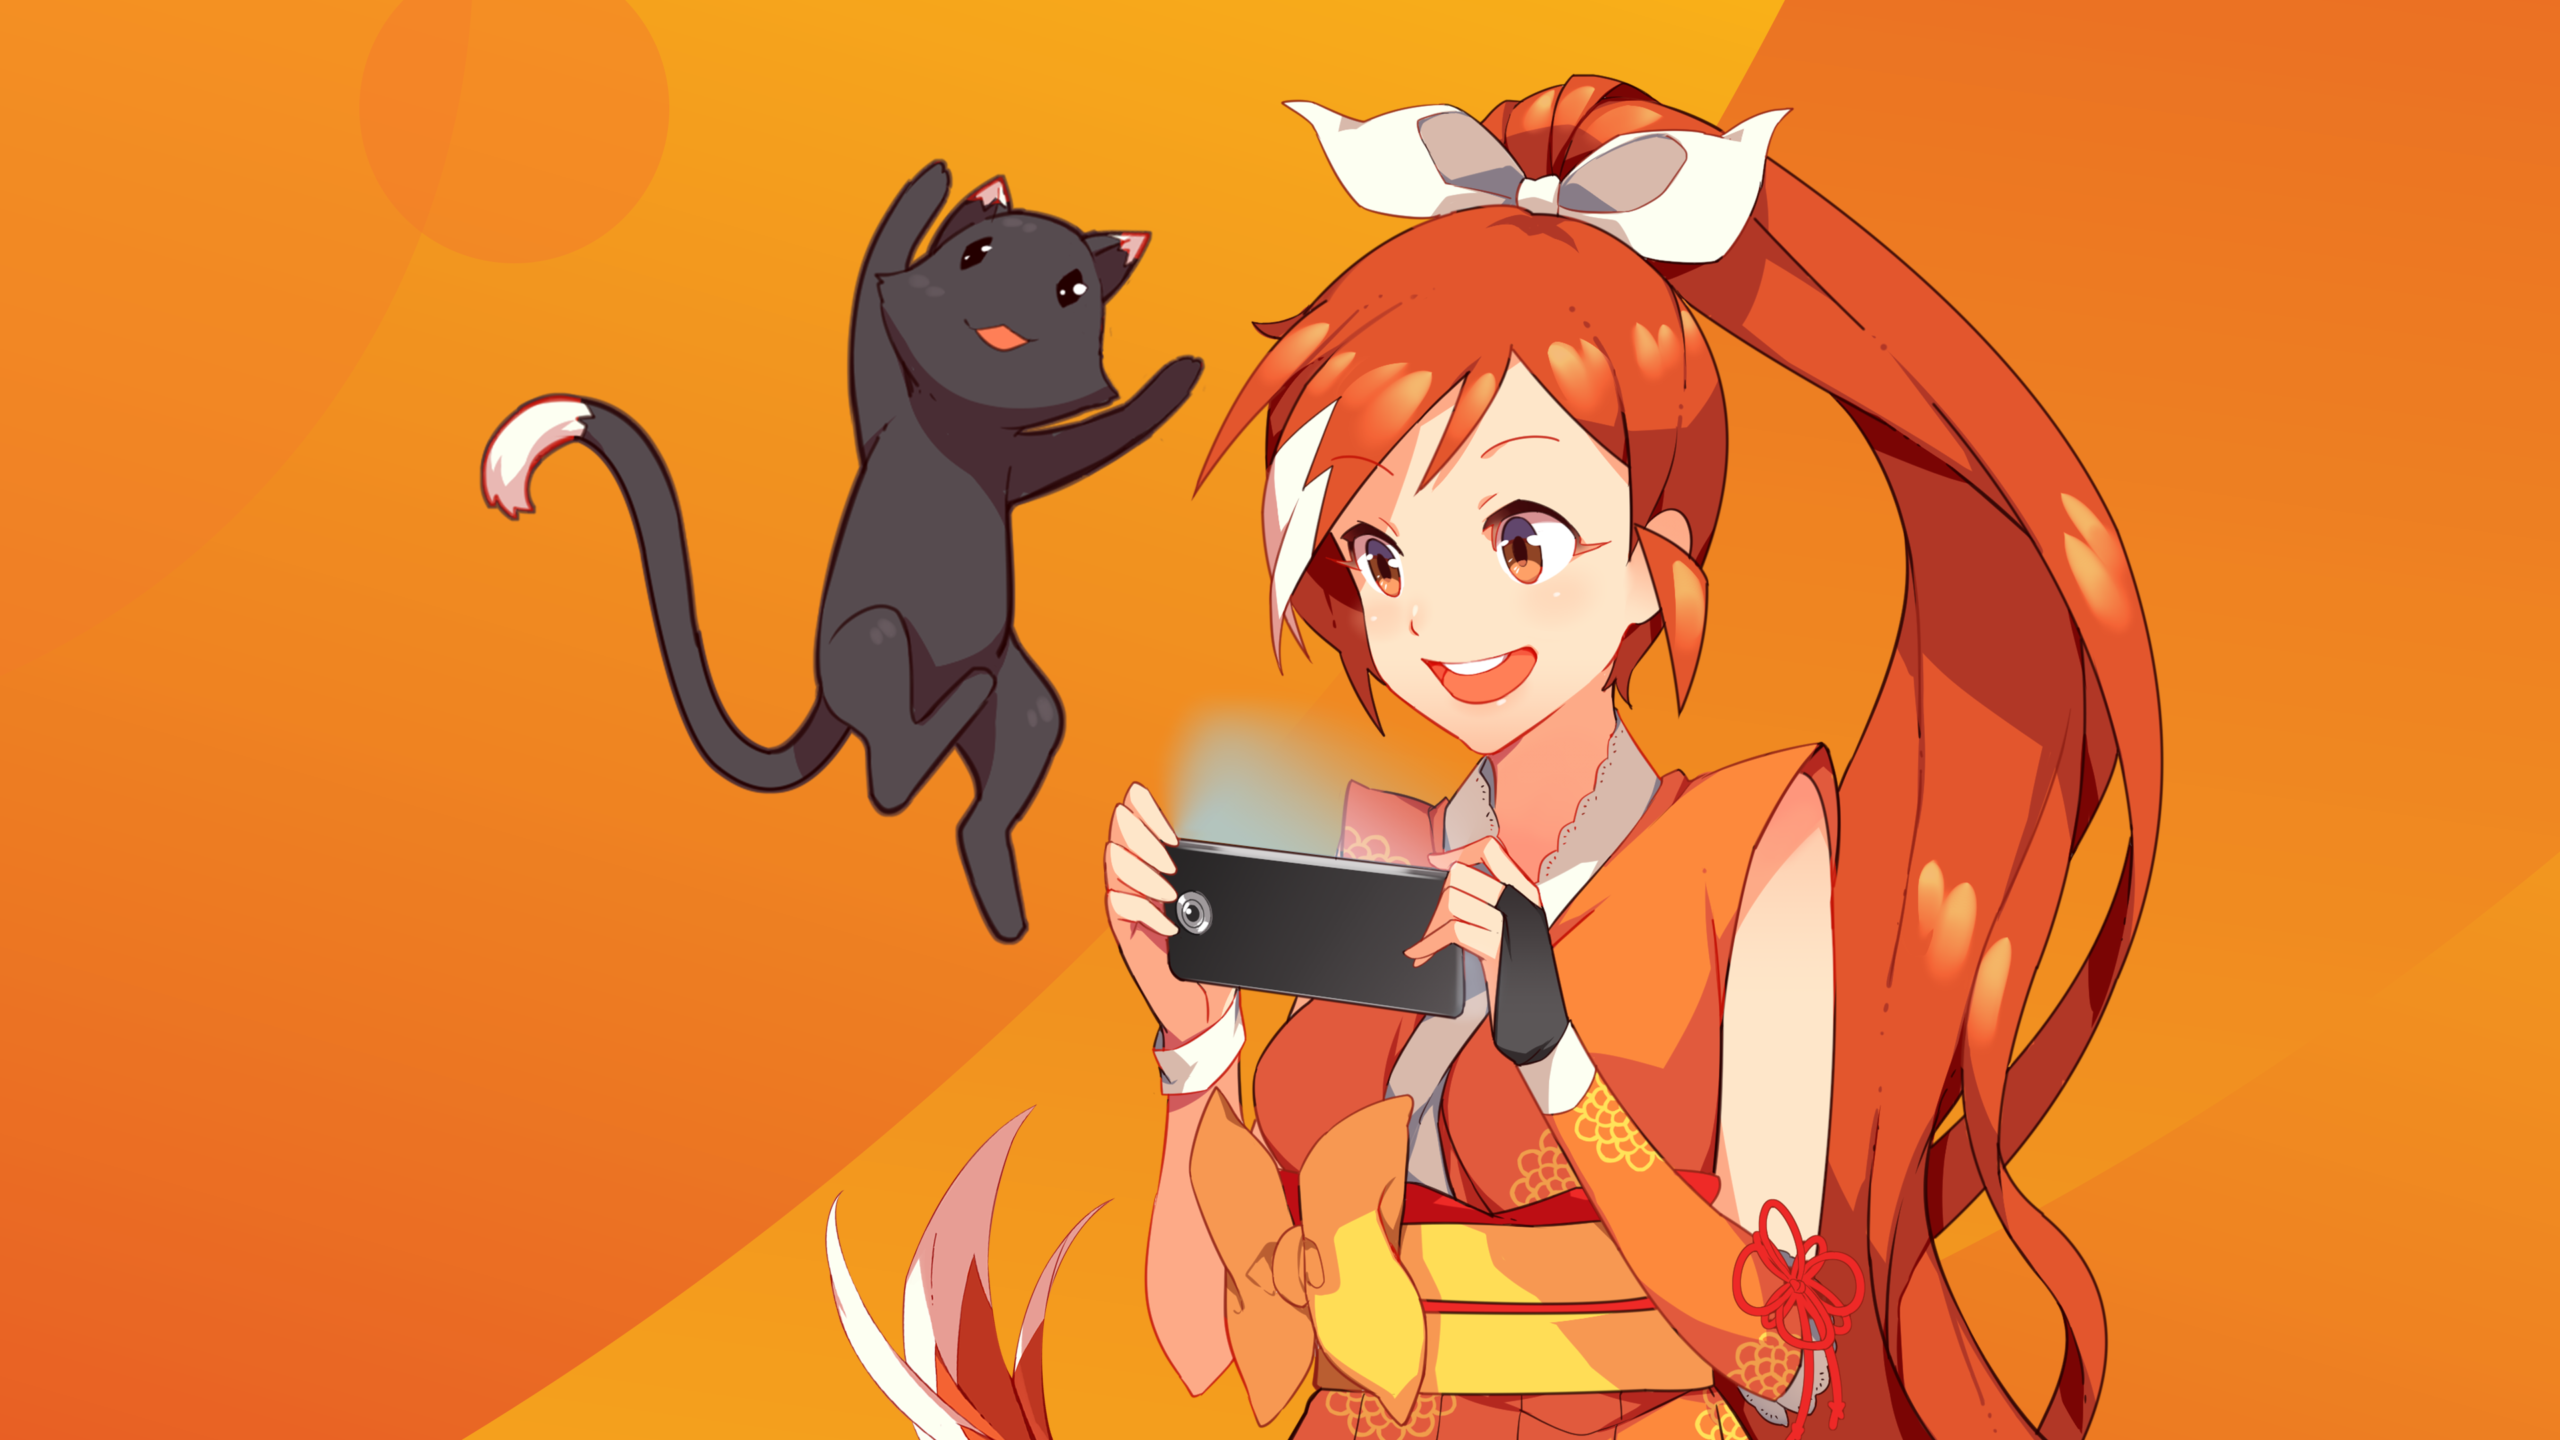 Assista Animes Online HD Grátis: A melhor maneira de aproveitar